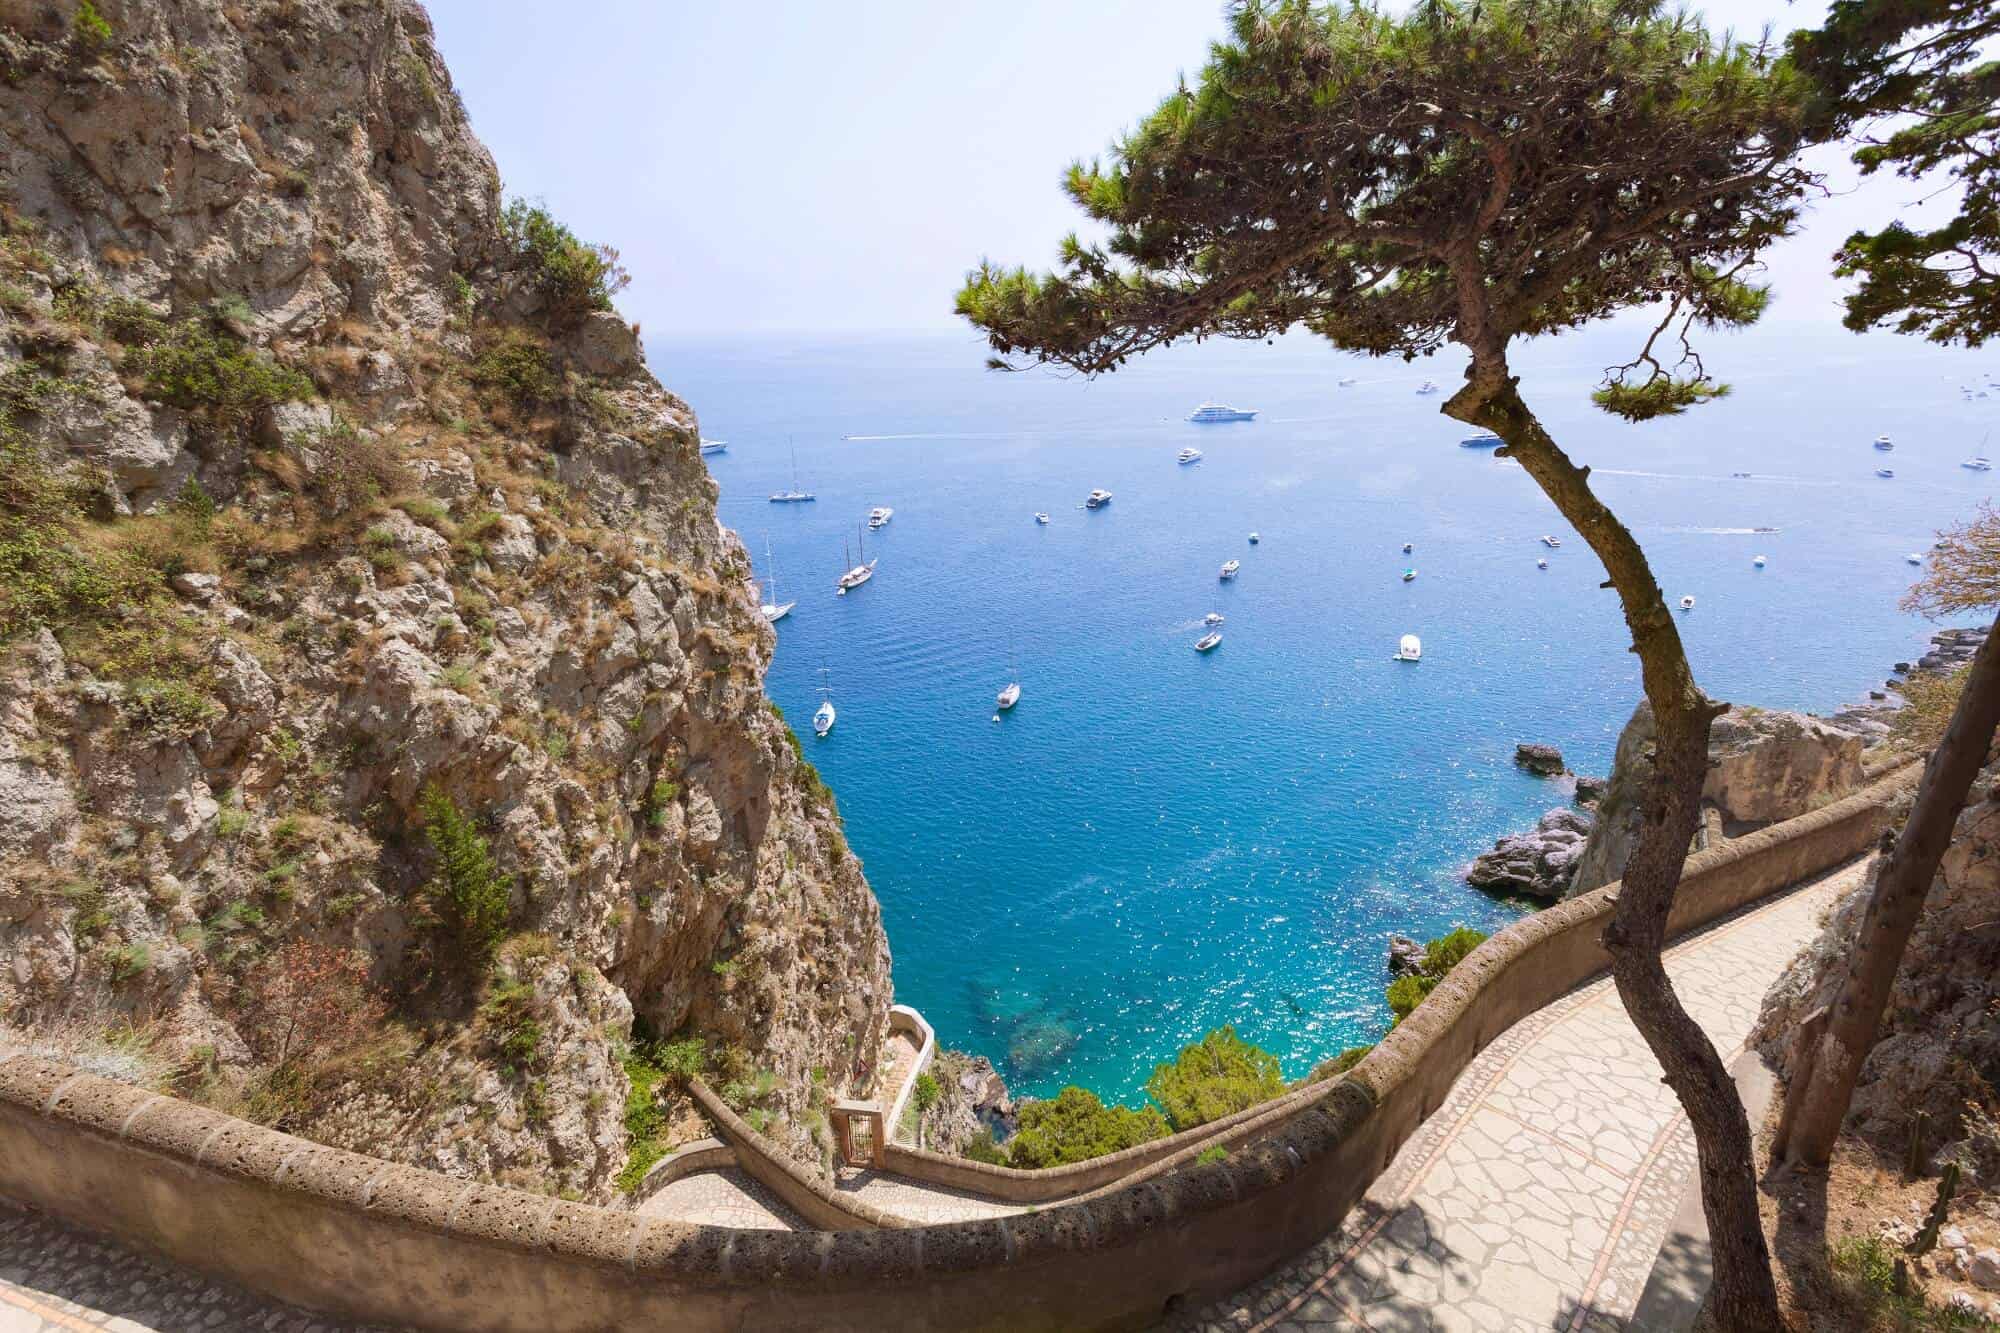 Mountain path on Capri